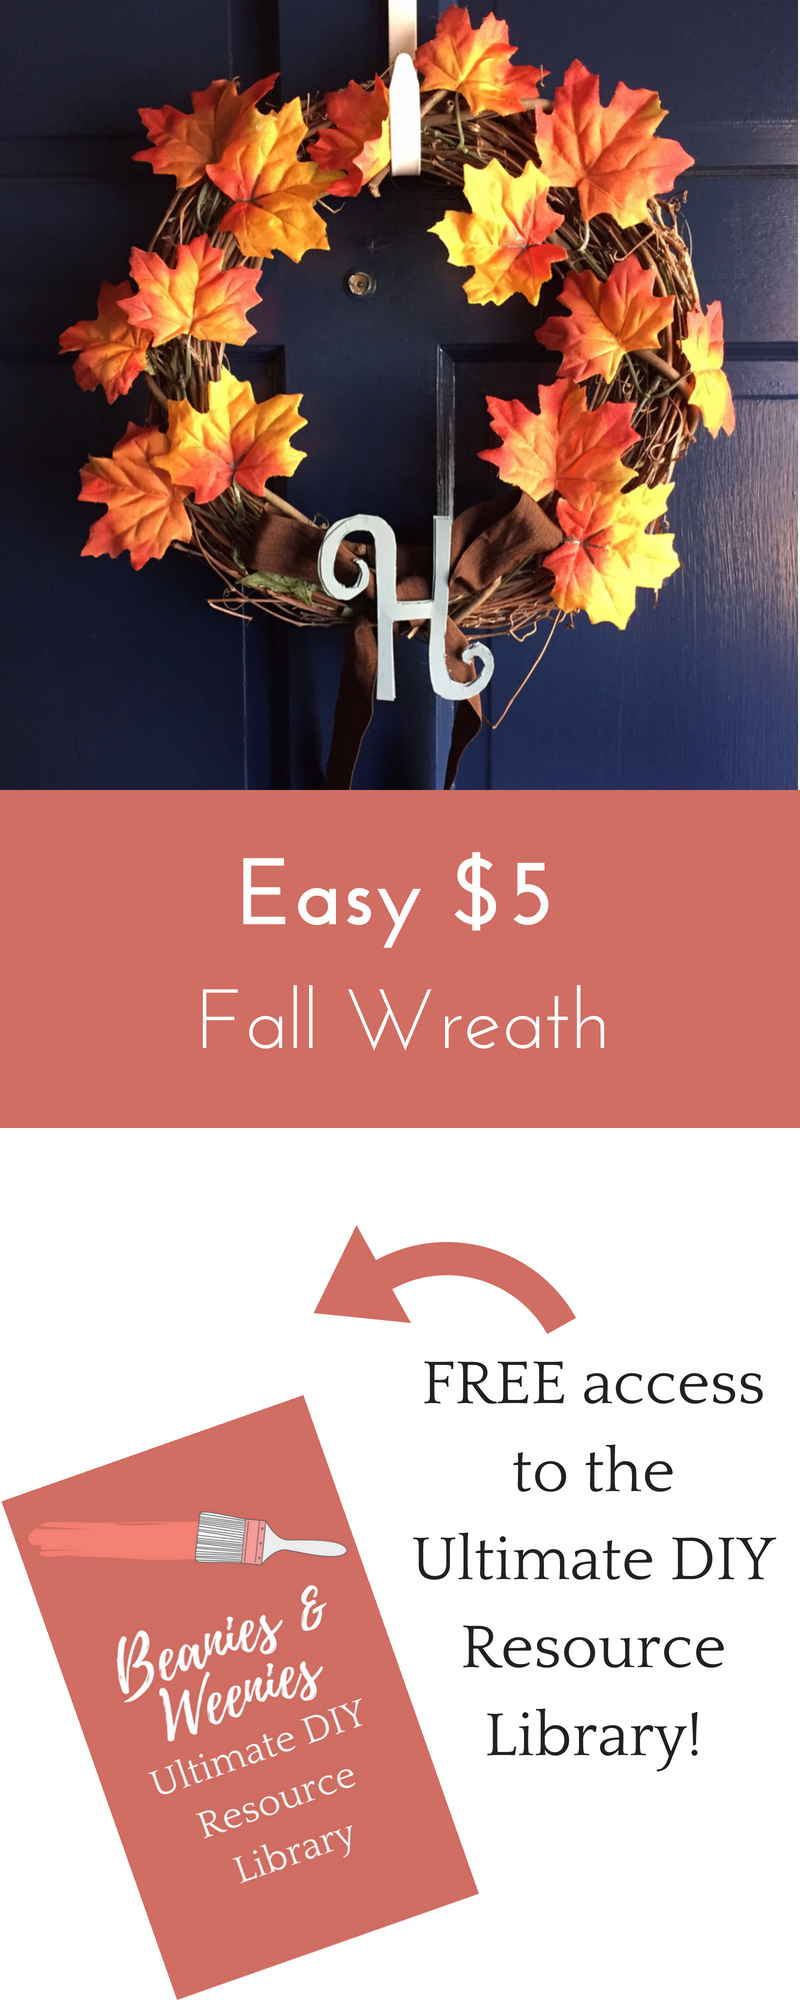 Easy $5 fall wreath